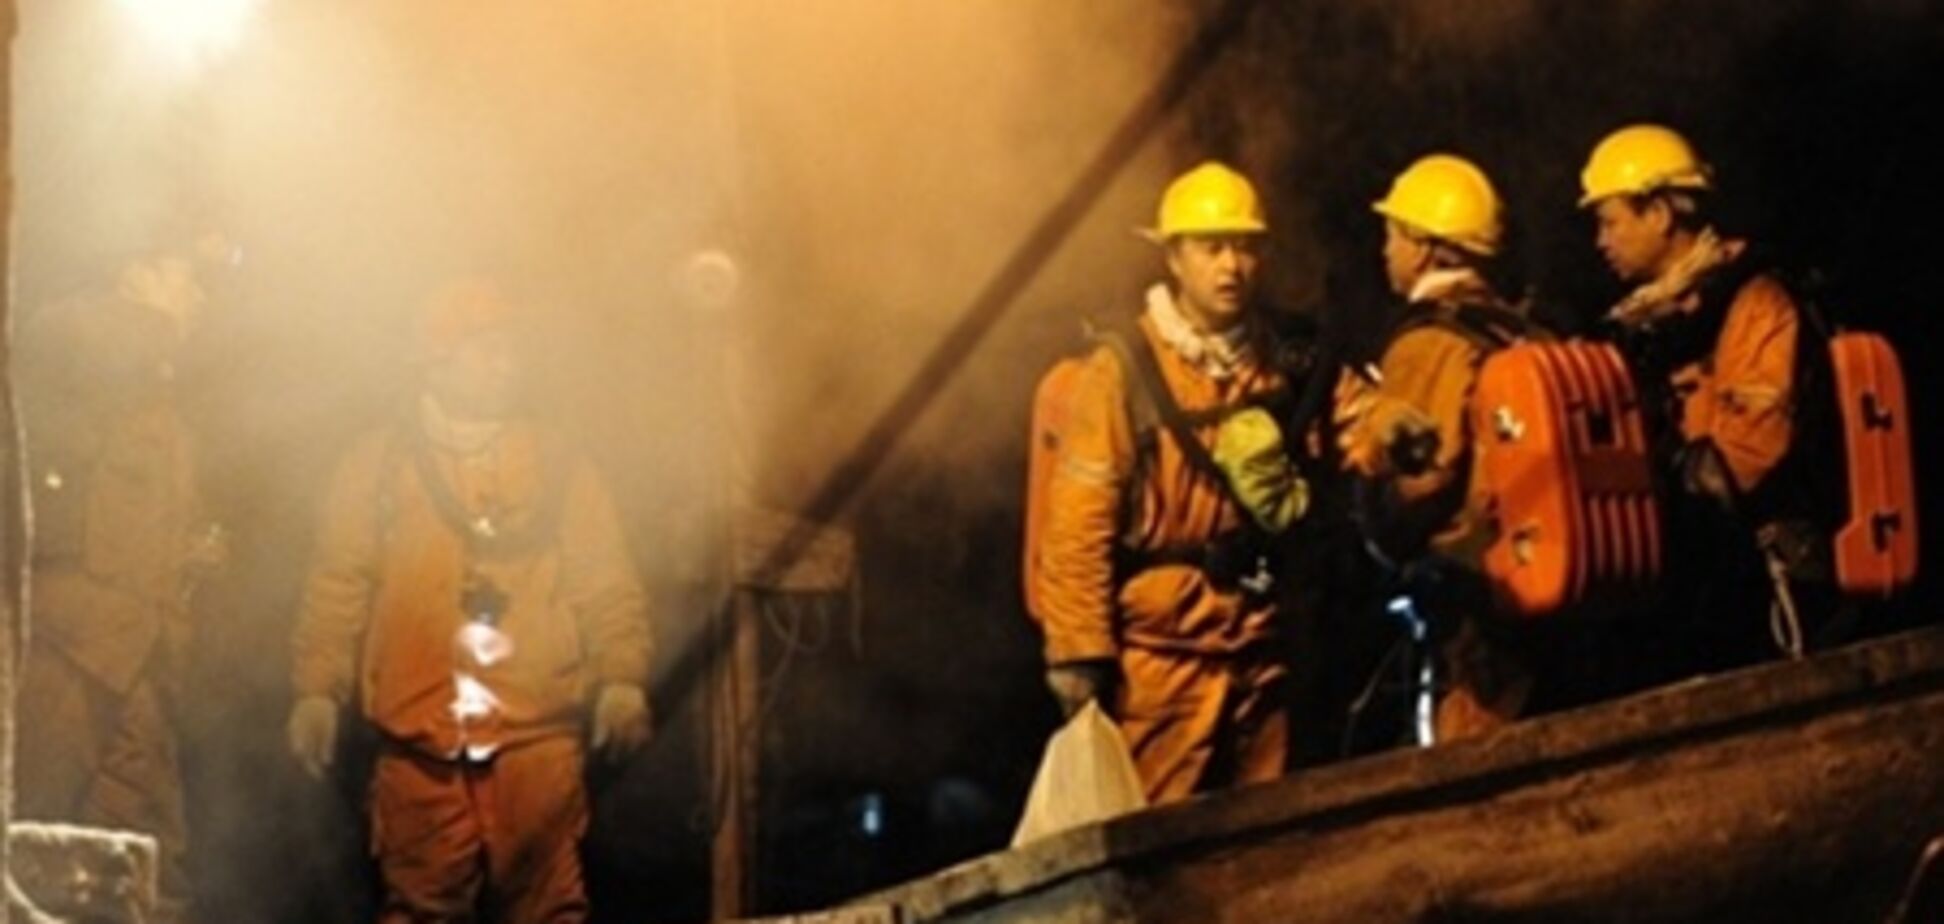 Около 30 шахтеров заблокированы из-за пожара в шахте в Китае